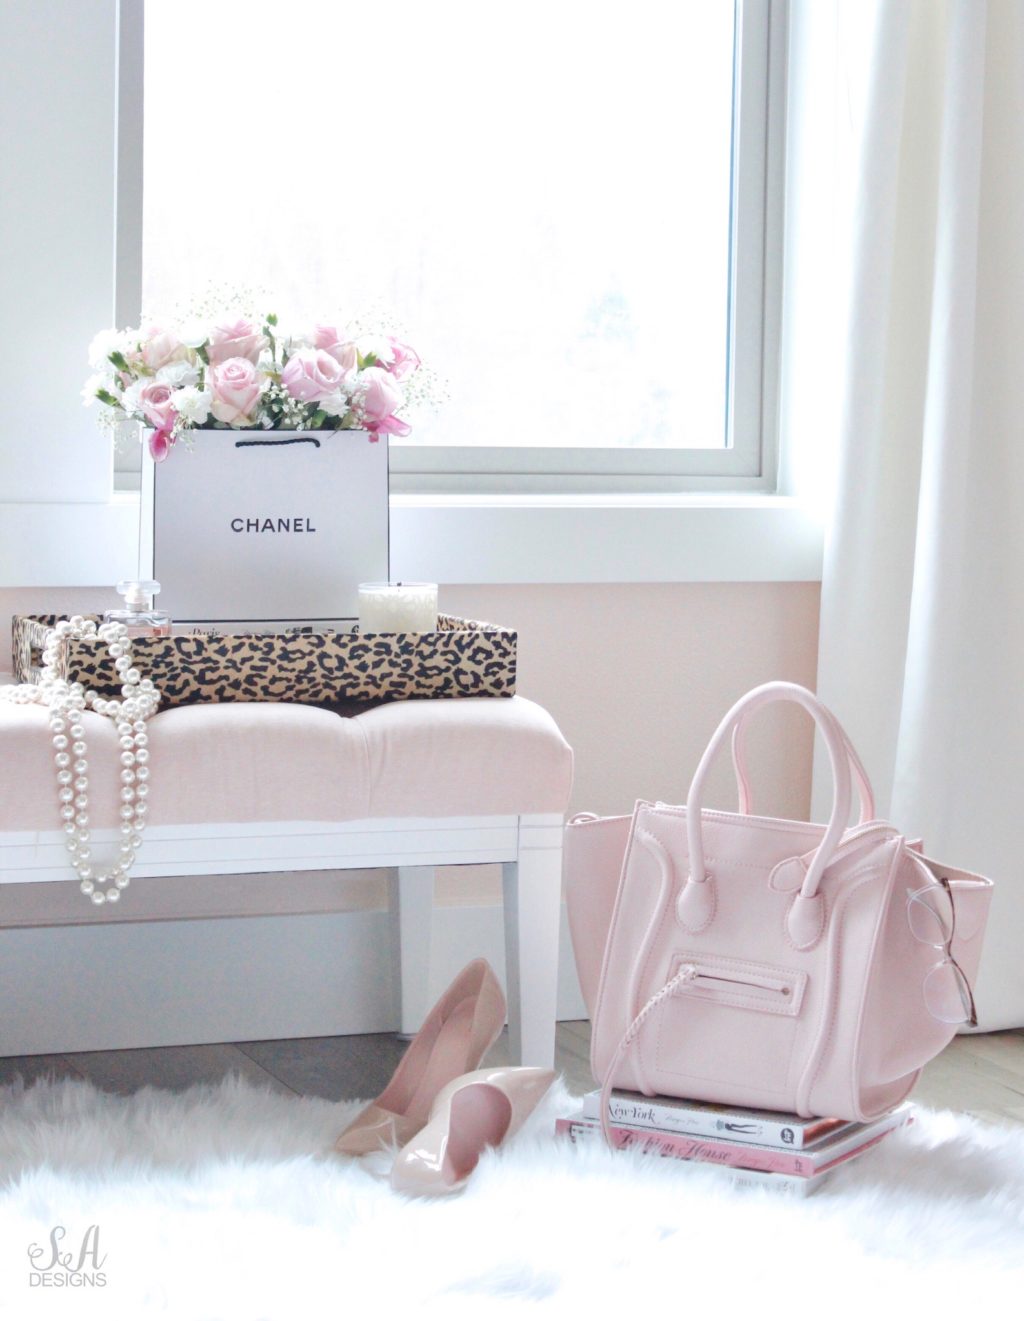 How To Maintain Your Chanel Bag? – l'Étoile de Saint Honoré